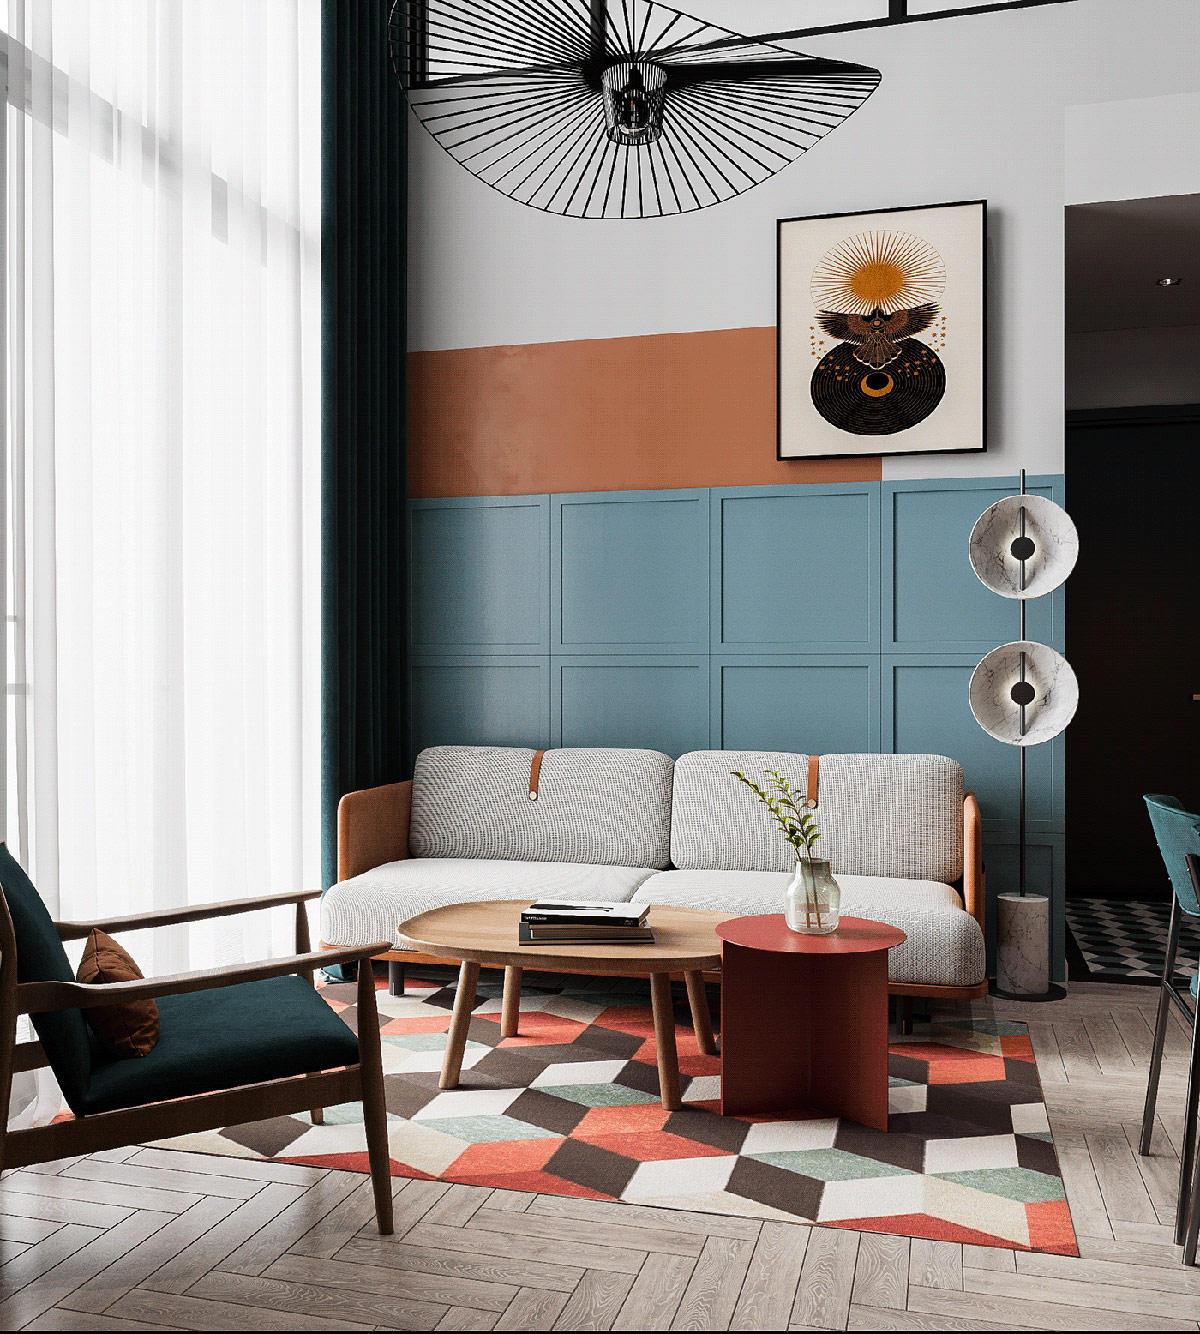 Căn hộ đầu tiên mà chúng tôi giới thiệu đến các bạn sử dụng nội thất họa tiết hình học trẻ trung. Tấm thảm kết hợp các yếu tố màu cam và xanh lam trên sàn nhà, trong khu bức tường chọn 3 màu sơn trắng, cam, xanh xen kẽ đẹp mắt.